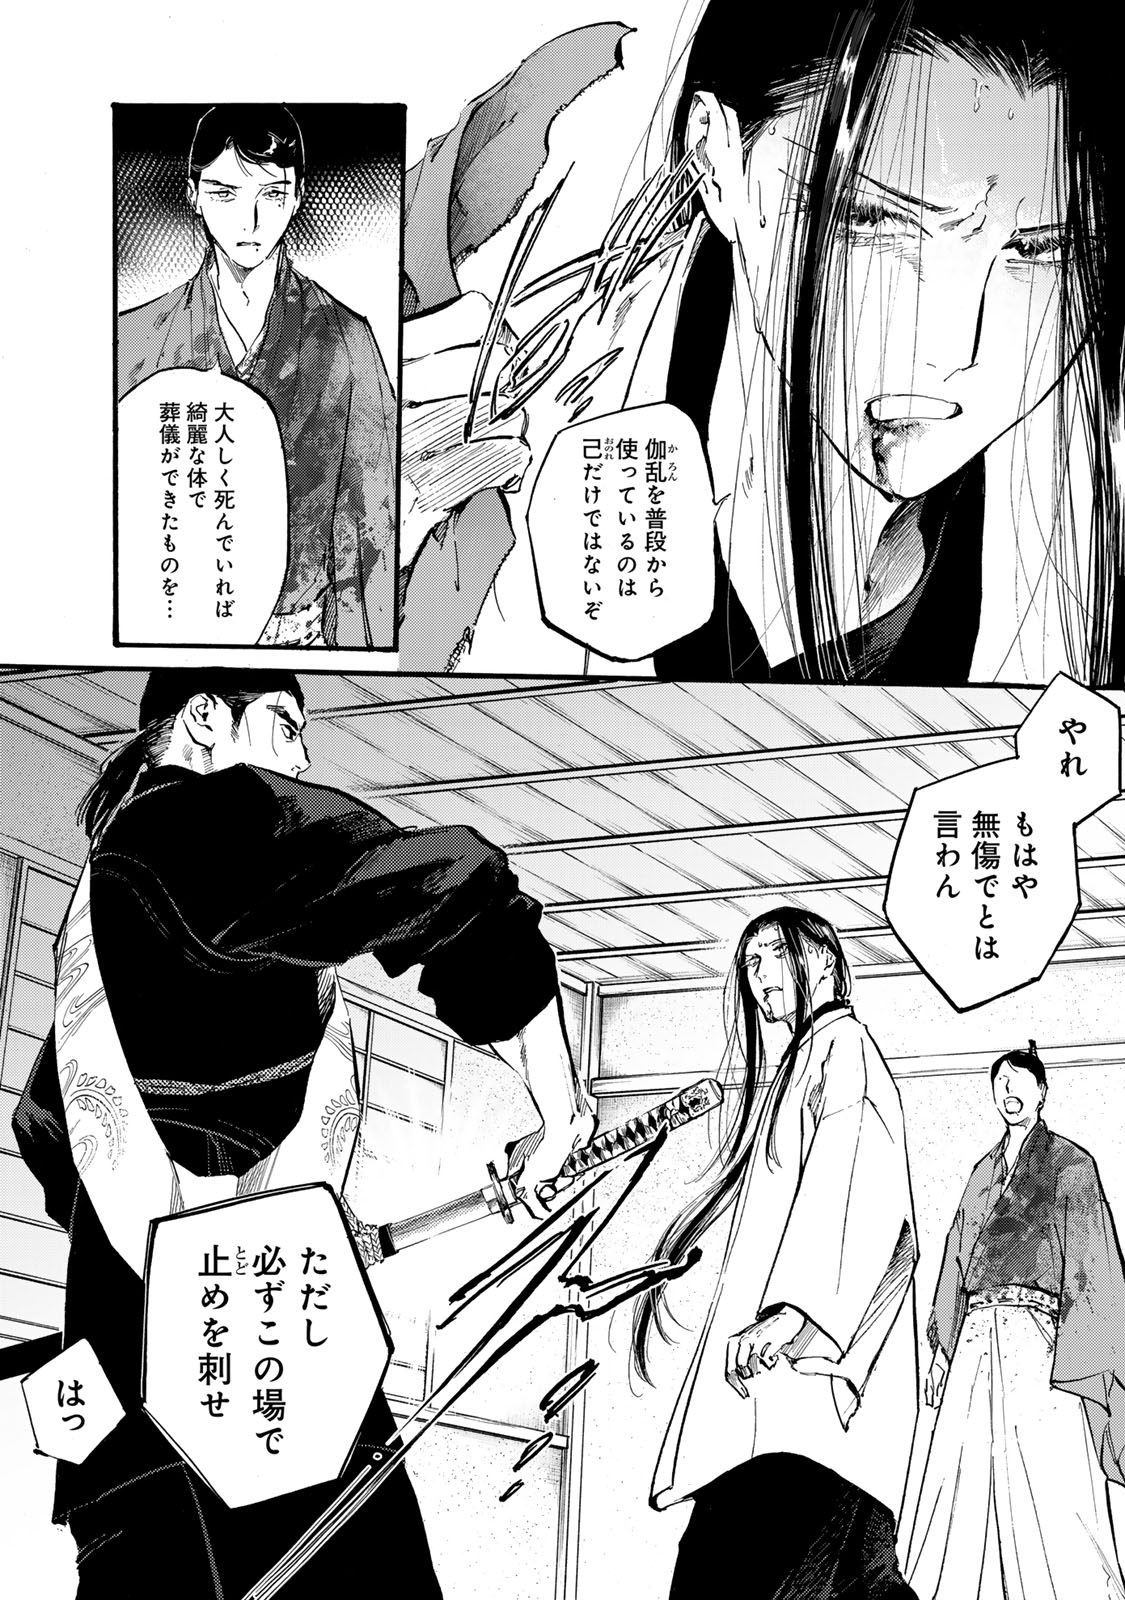 Karasu wa Aruji wo Erabanai - Chapter 42 - Page 4